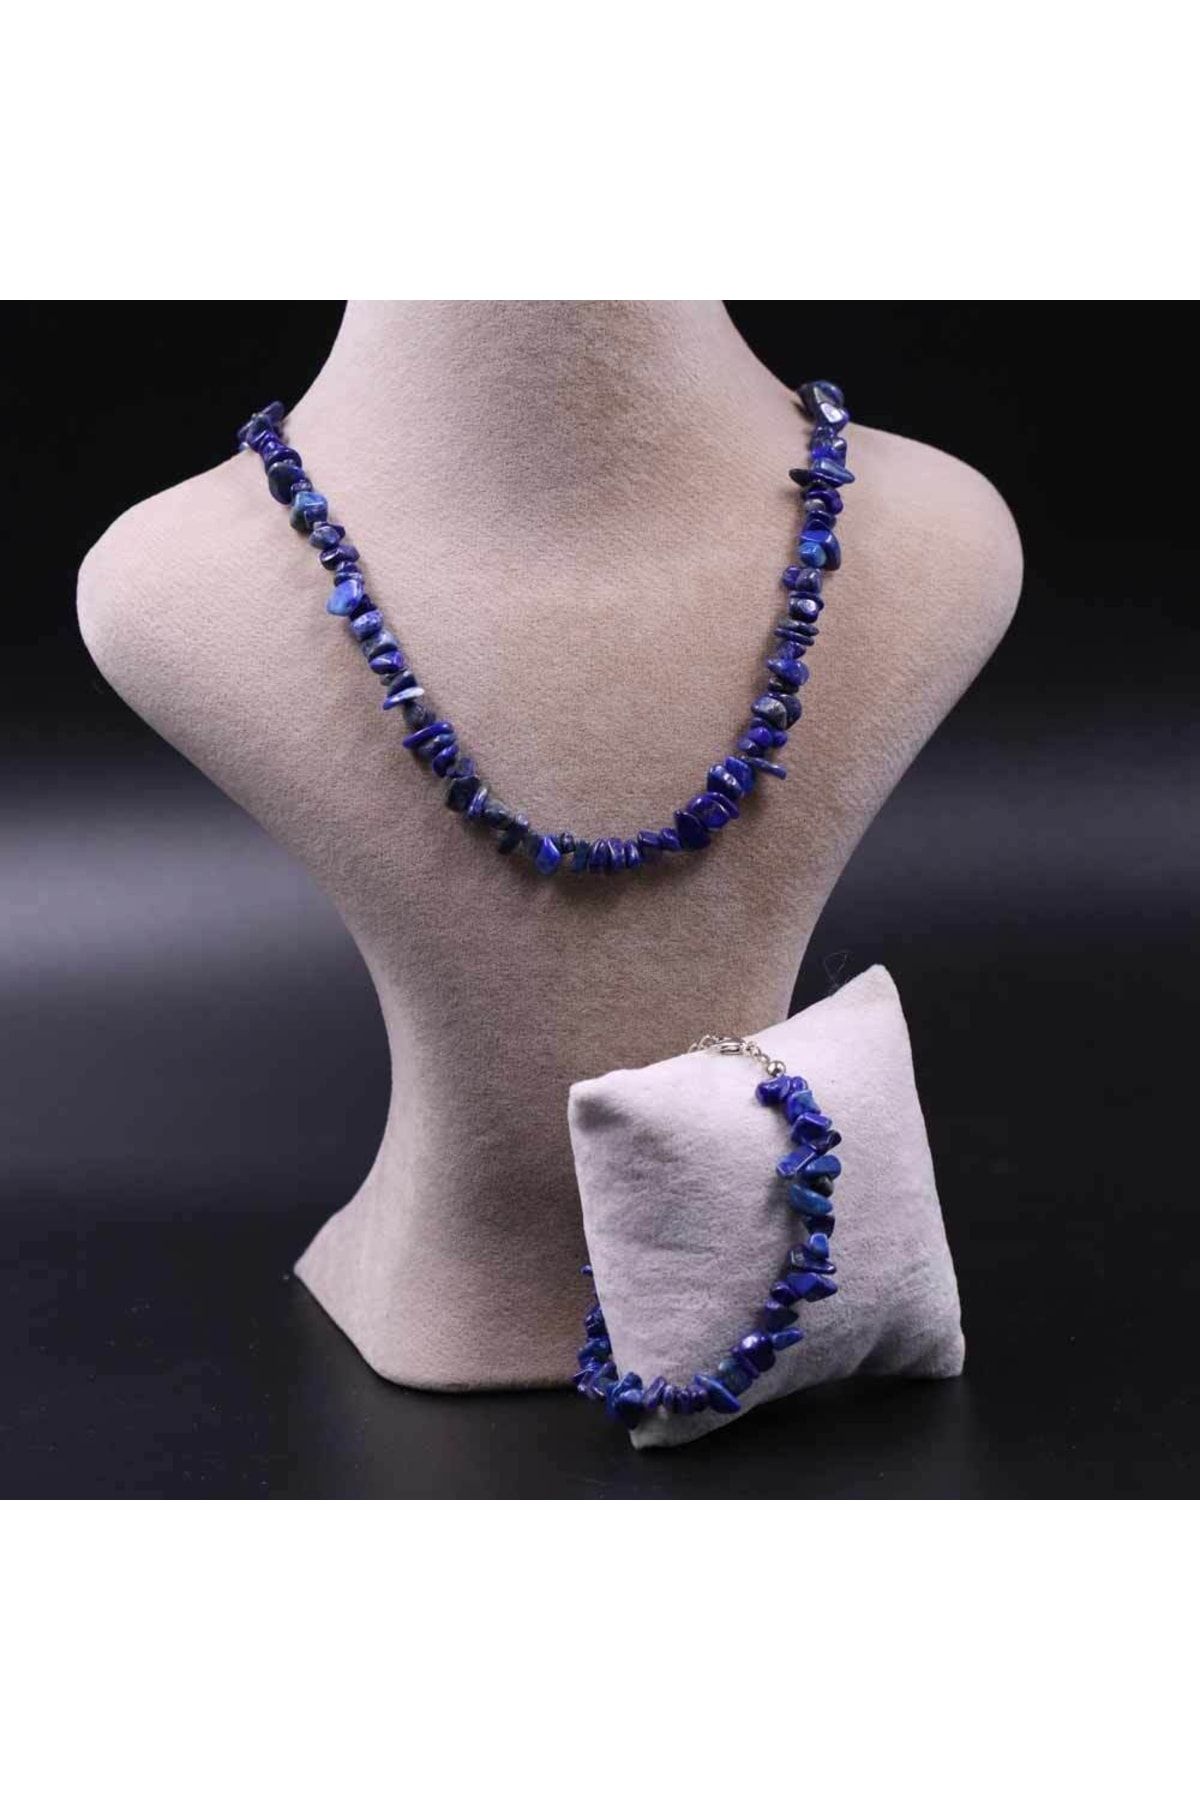 MYTAKIAĞACIMFH Lapis Lazuli Taşı Şekilsiz Kırık Taş Kolye Bileklik Seti (zincir Uzatmalı)